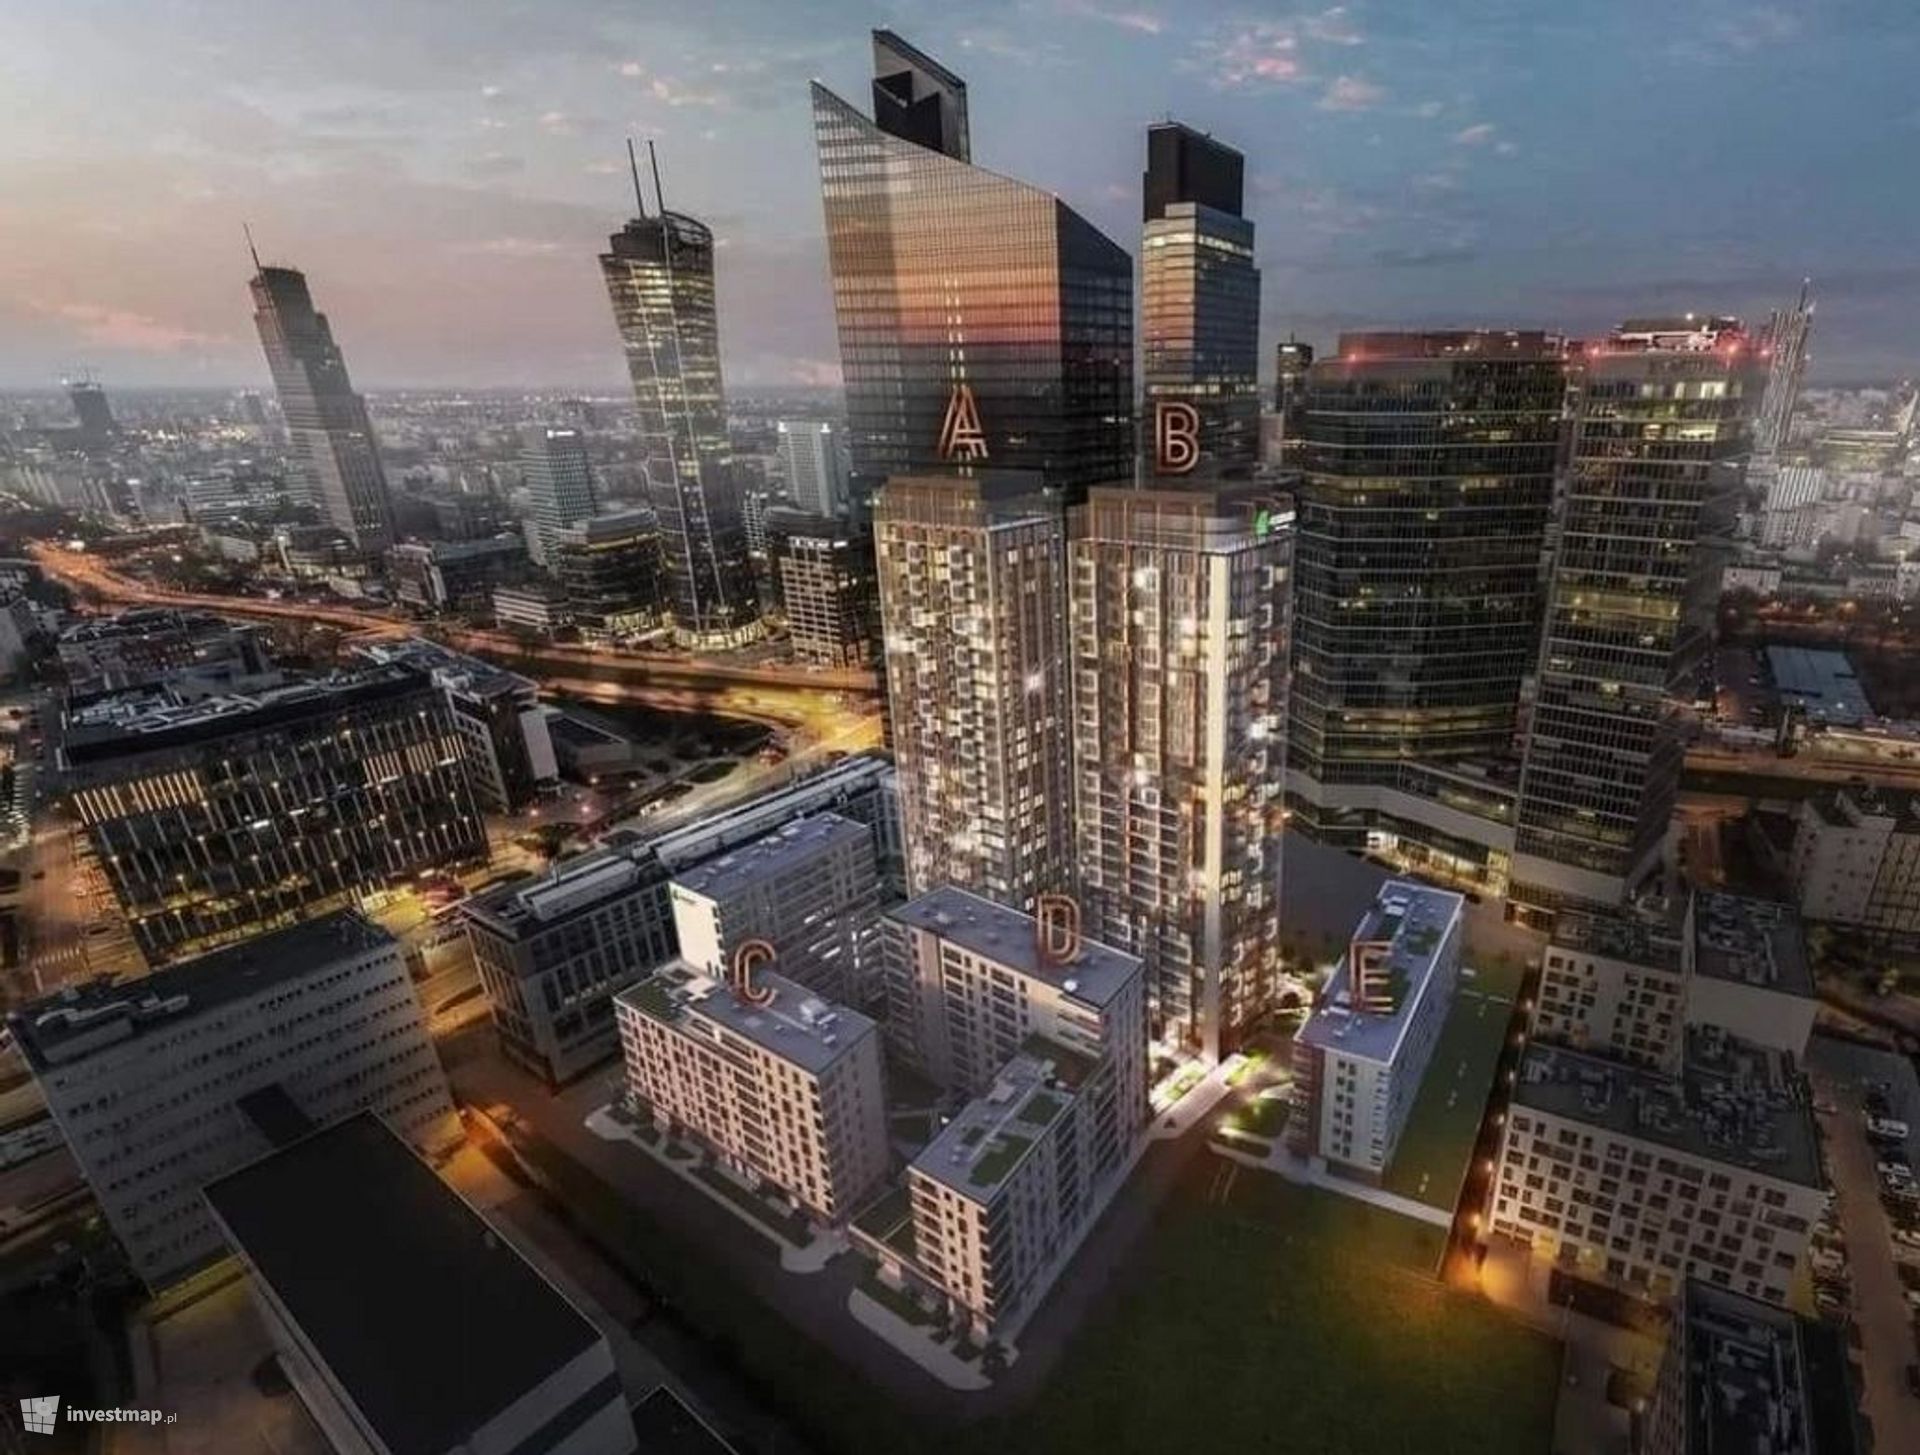 W centrum Warszawy trwa budowa dwóch 95-metrowych budynków Towarowa Towers 